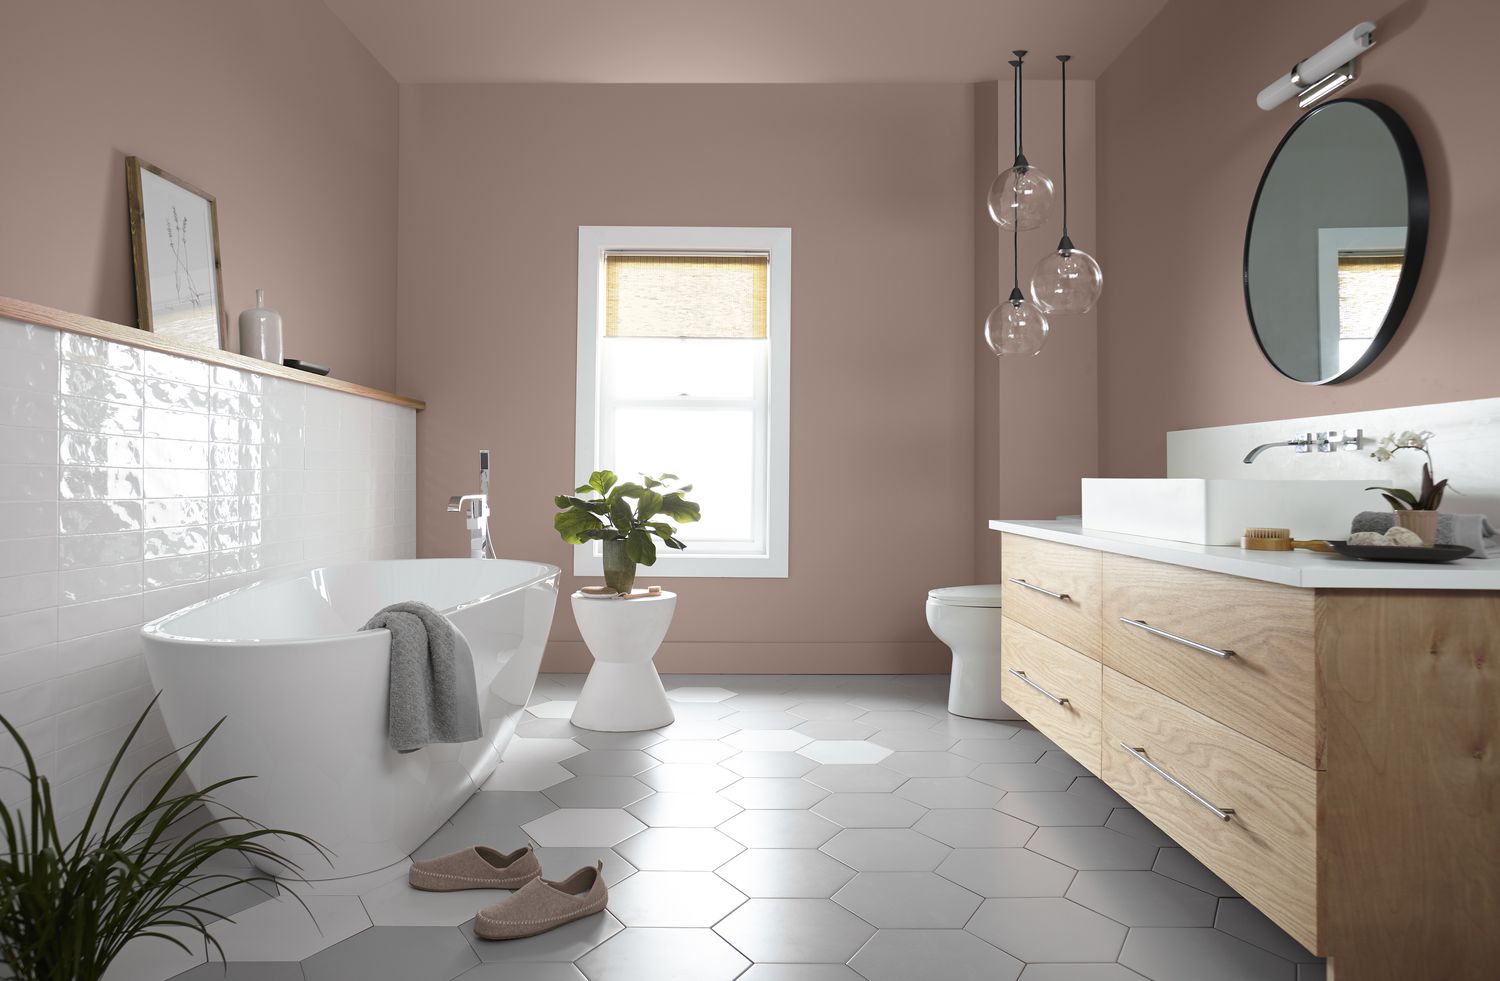 Die neutrale Farbe an den Wänden dieses Badezimmers trägt zu einer beruhigenden Wirkung bei